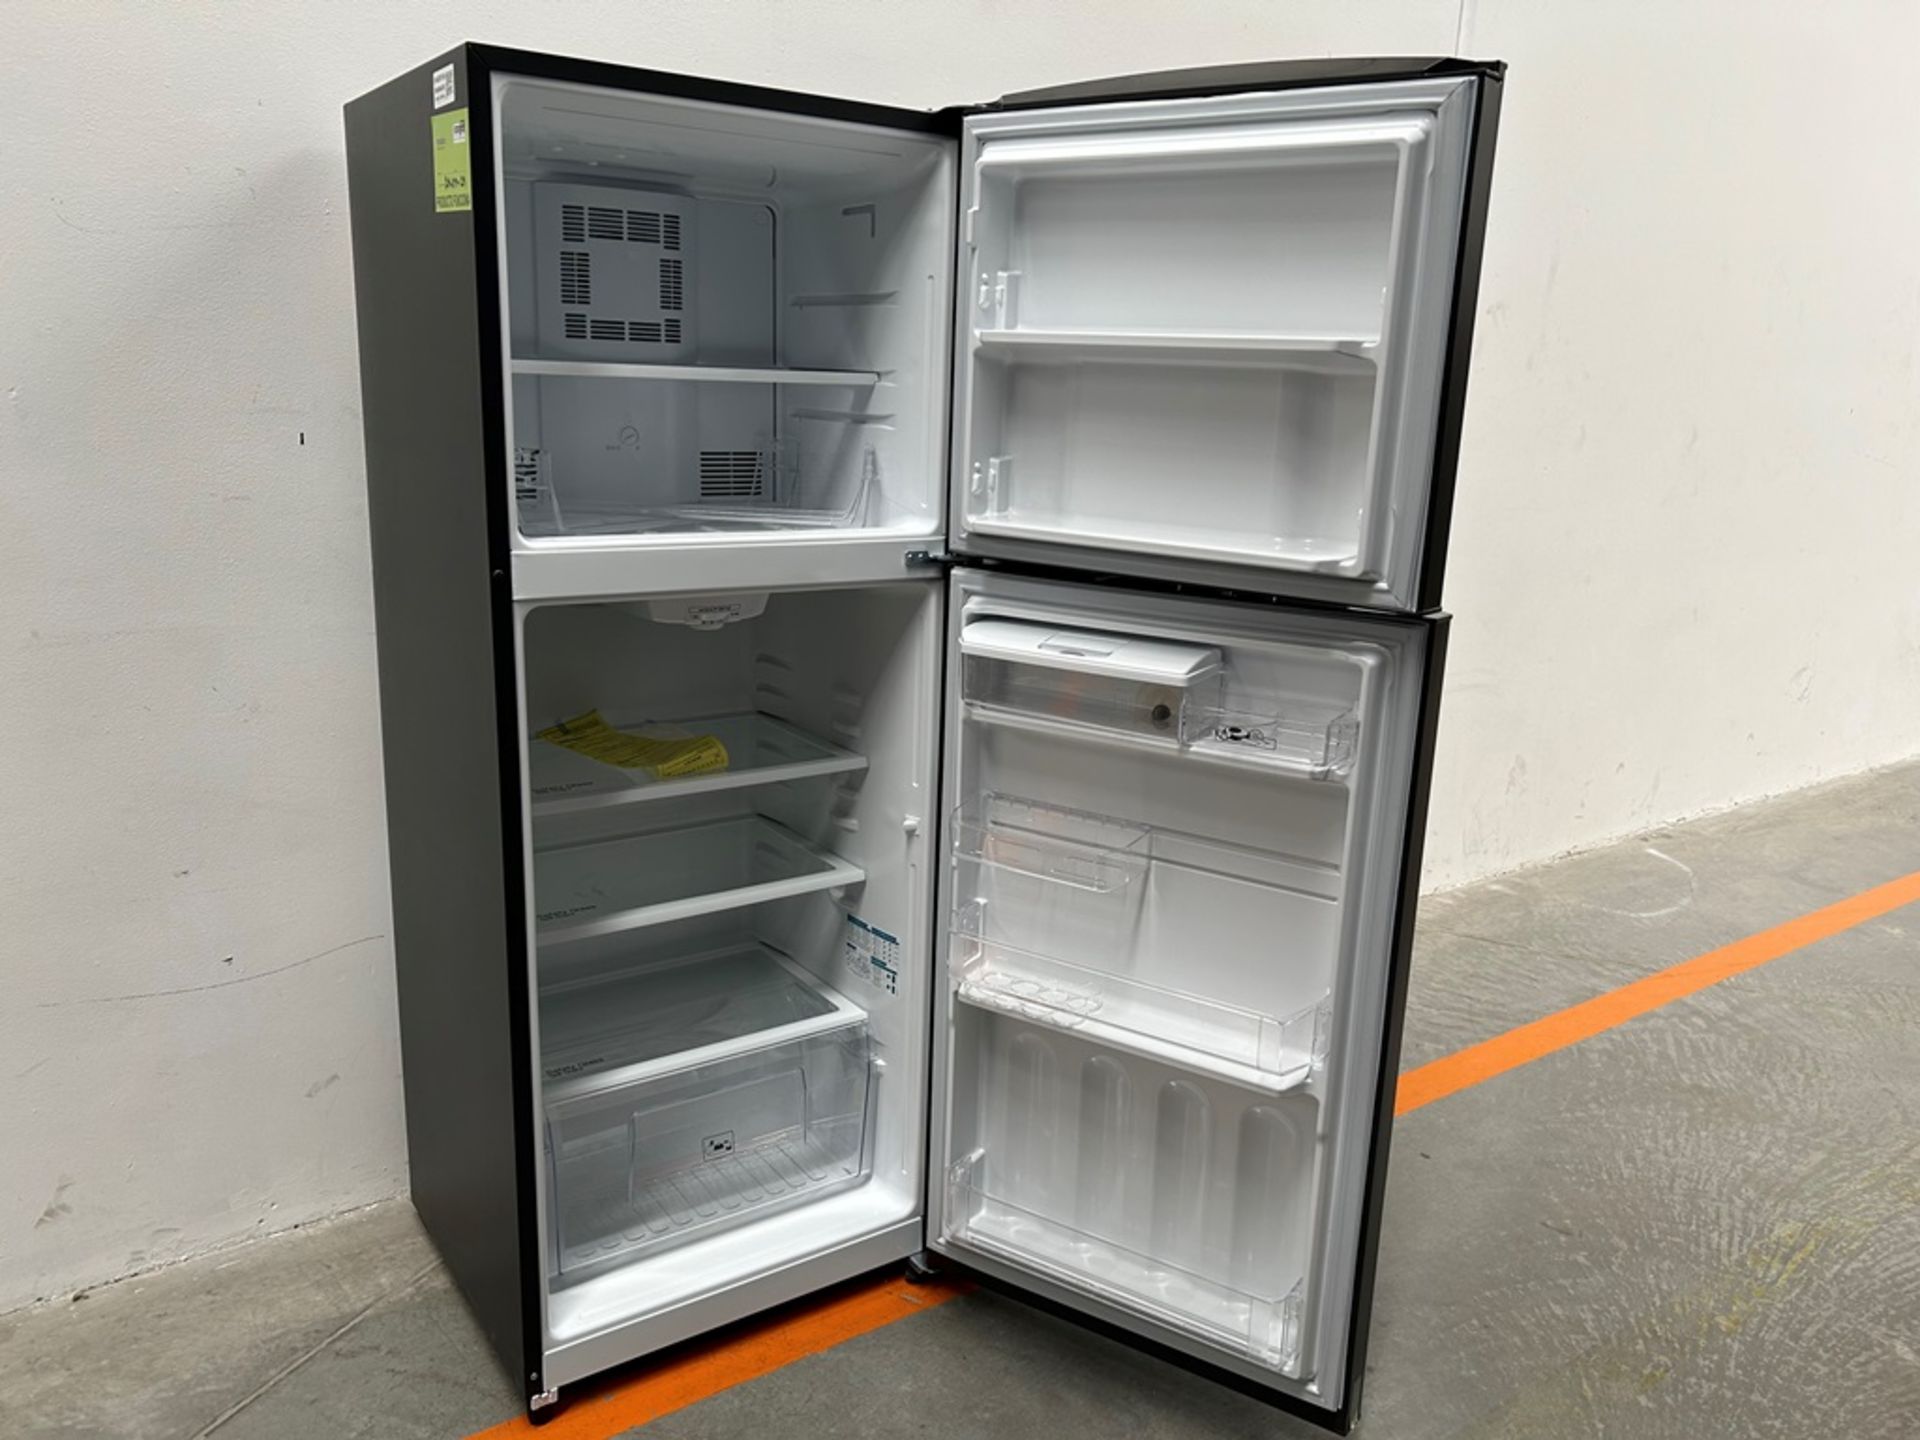 Lote de 2 refrigeradores contiene: 1 refrigerador con dispensador de agua Marca MABE, Modelo RME360 - Image 4 of 18